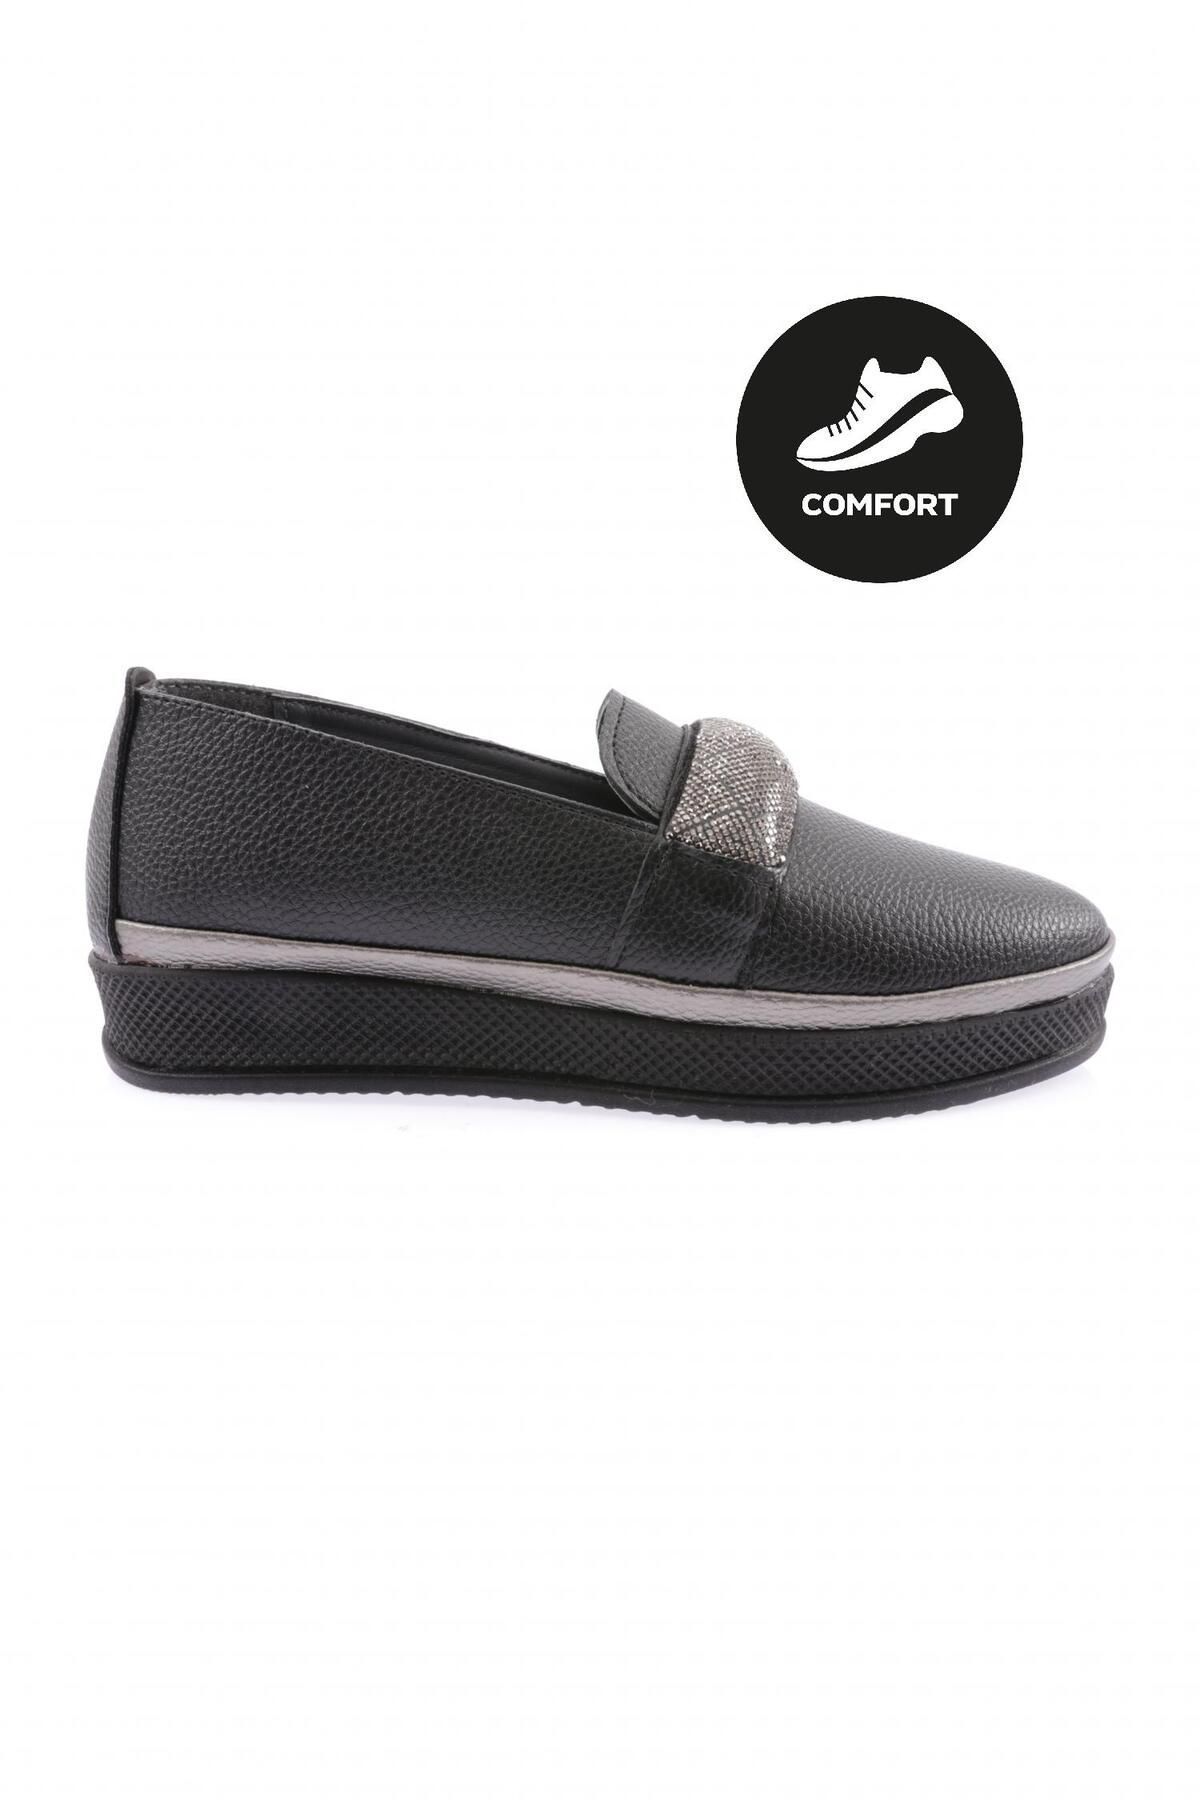 Dgn 307 Kadın Kalın Taban Silver Taş Bantlı Comfort Ayakkabı Siyah